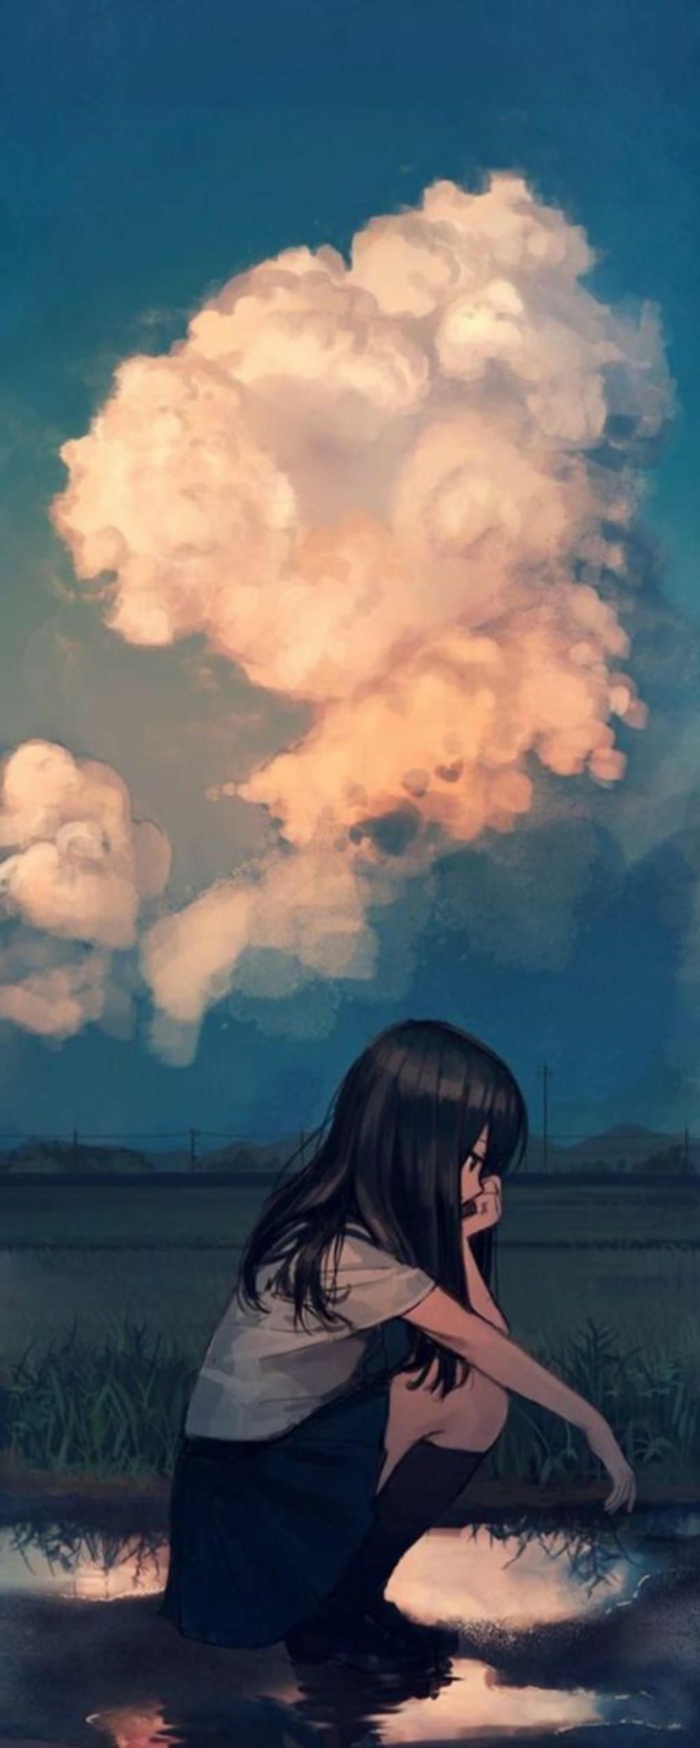 sad anime wallpaper iphone mädchen draußen regen große wolken